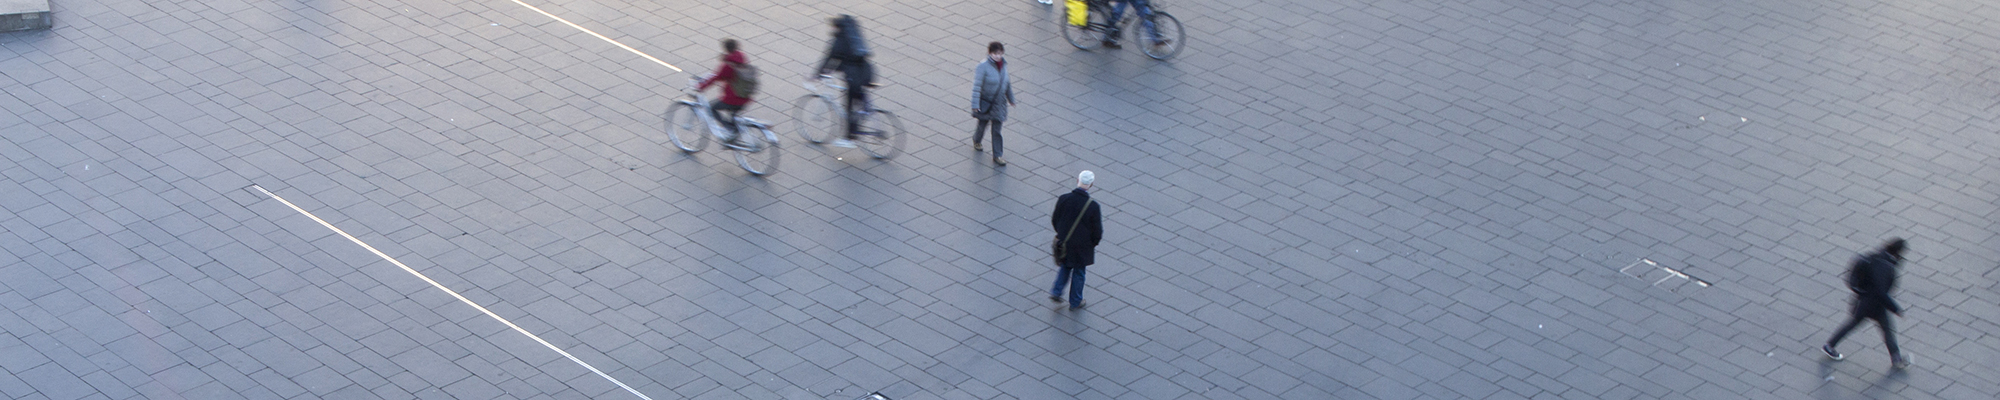 Vereinzelte Menschen auf dem Marktplatz in Halle, Fußgänger sowie Radfahrer. Sie alle gehen in verschiedene Richtungen.